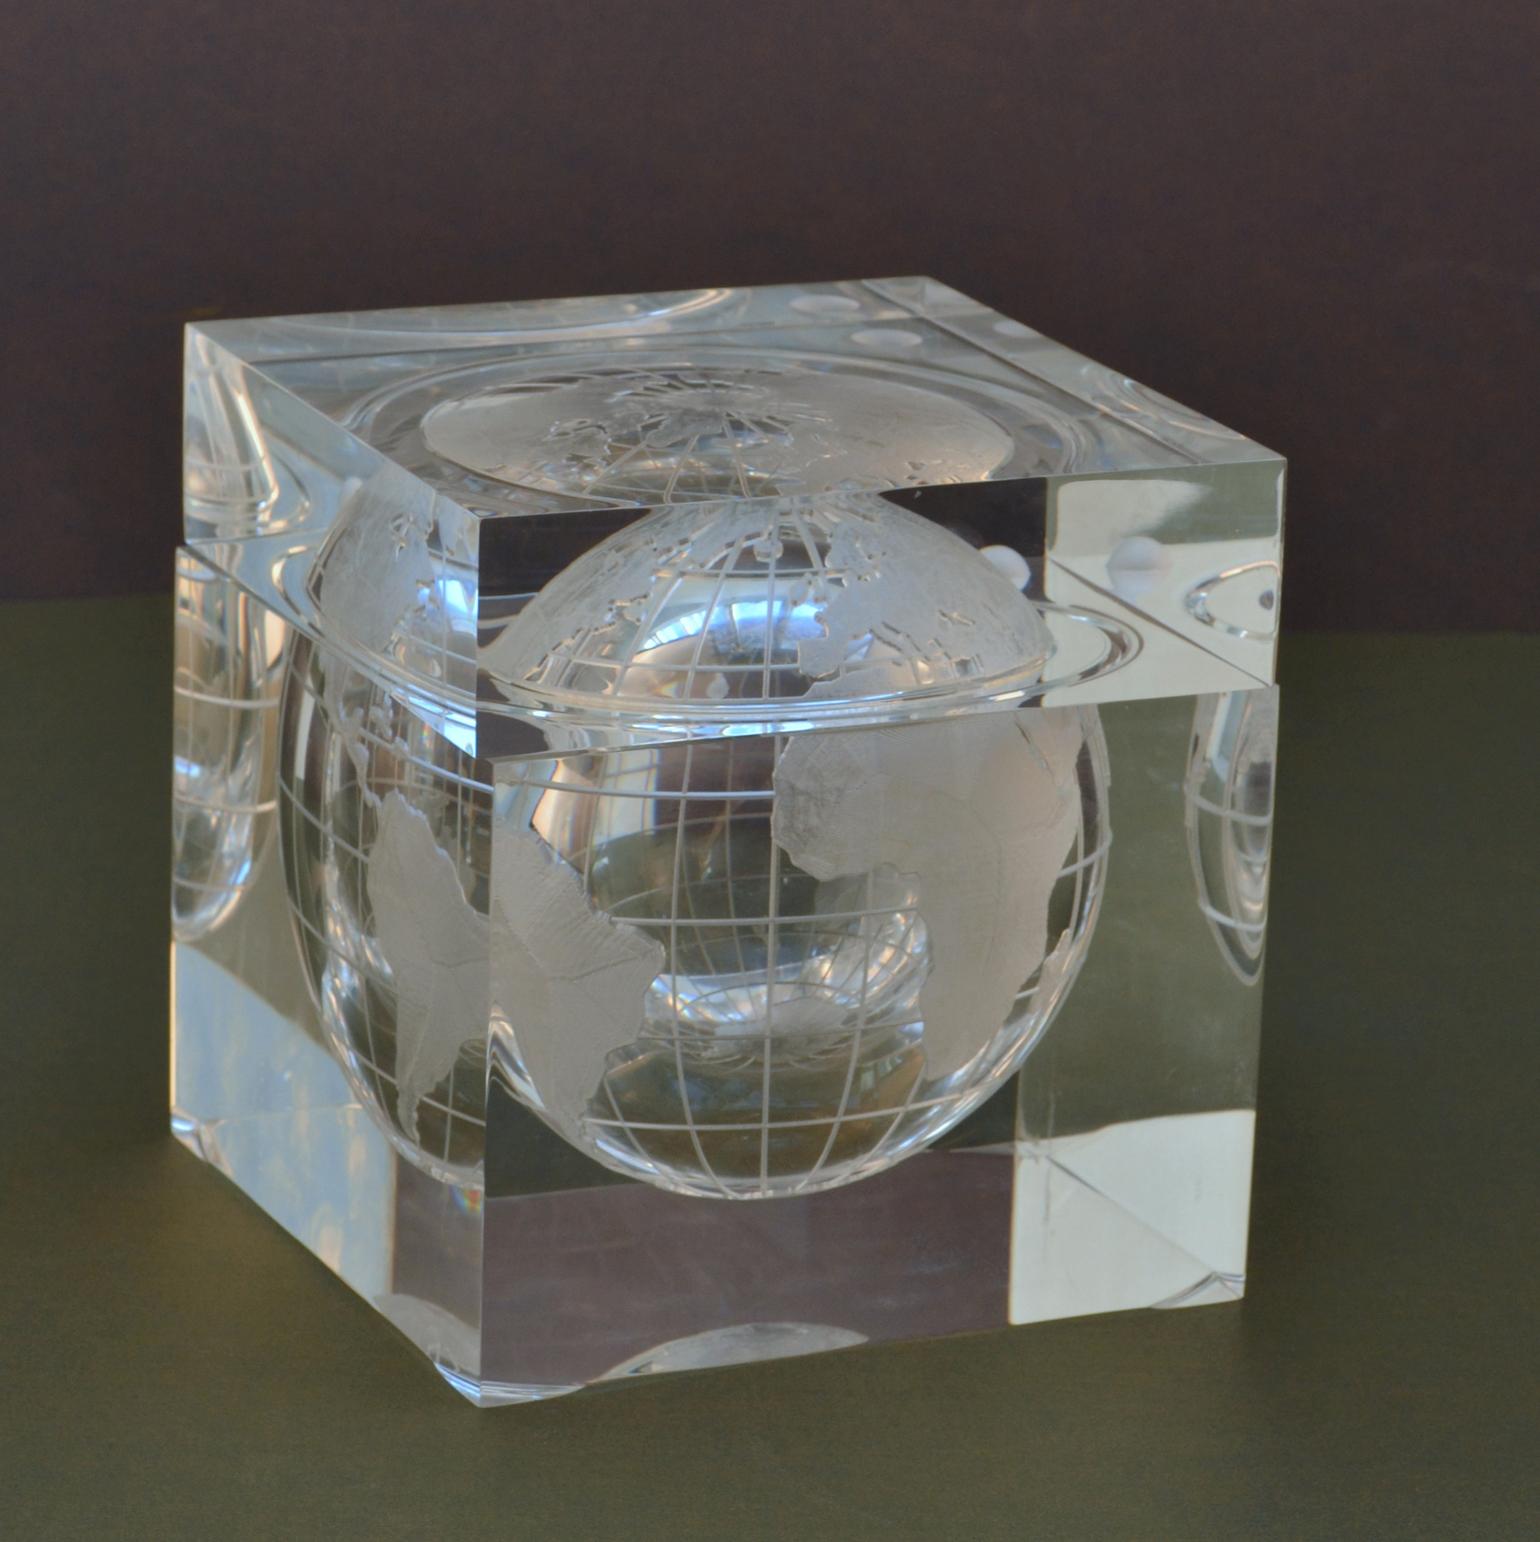 Bargeschirr aus Lucite-Würfel, das die Welt in einem Acrylwürfel darstellt, der einem Eiswürfel ähnelt. Mattierte Weltkarte mit Kontinenten und dem Mond in der Umlaufbahn. Der Eiskübel mit aufgehängter Weltkugel wurde von Alessandro Albrizzi in